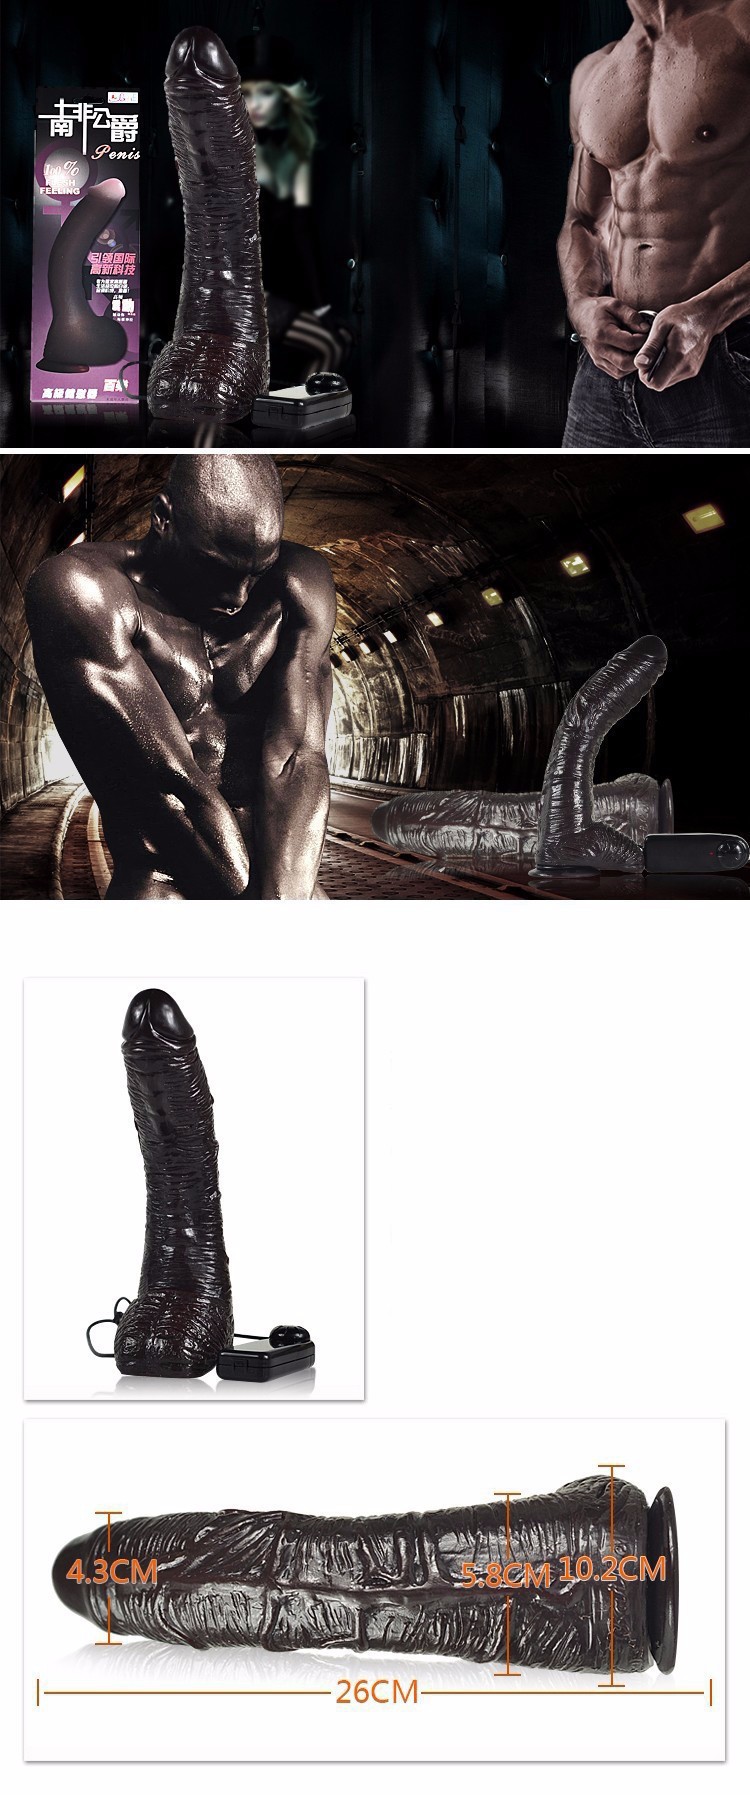 Penis Tempel Getar Negro Alat Sex Toys Wanita murah